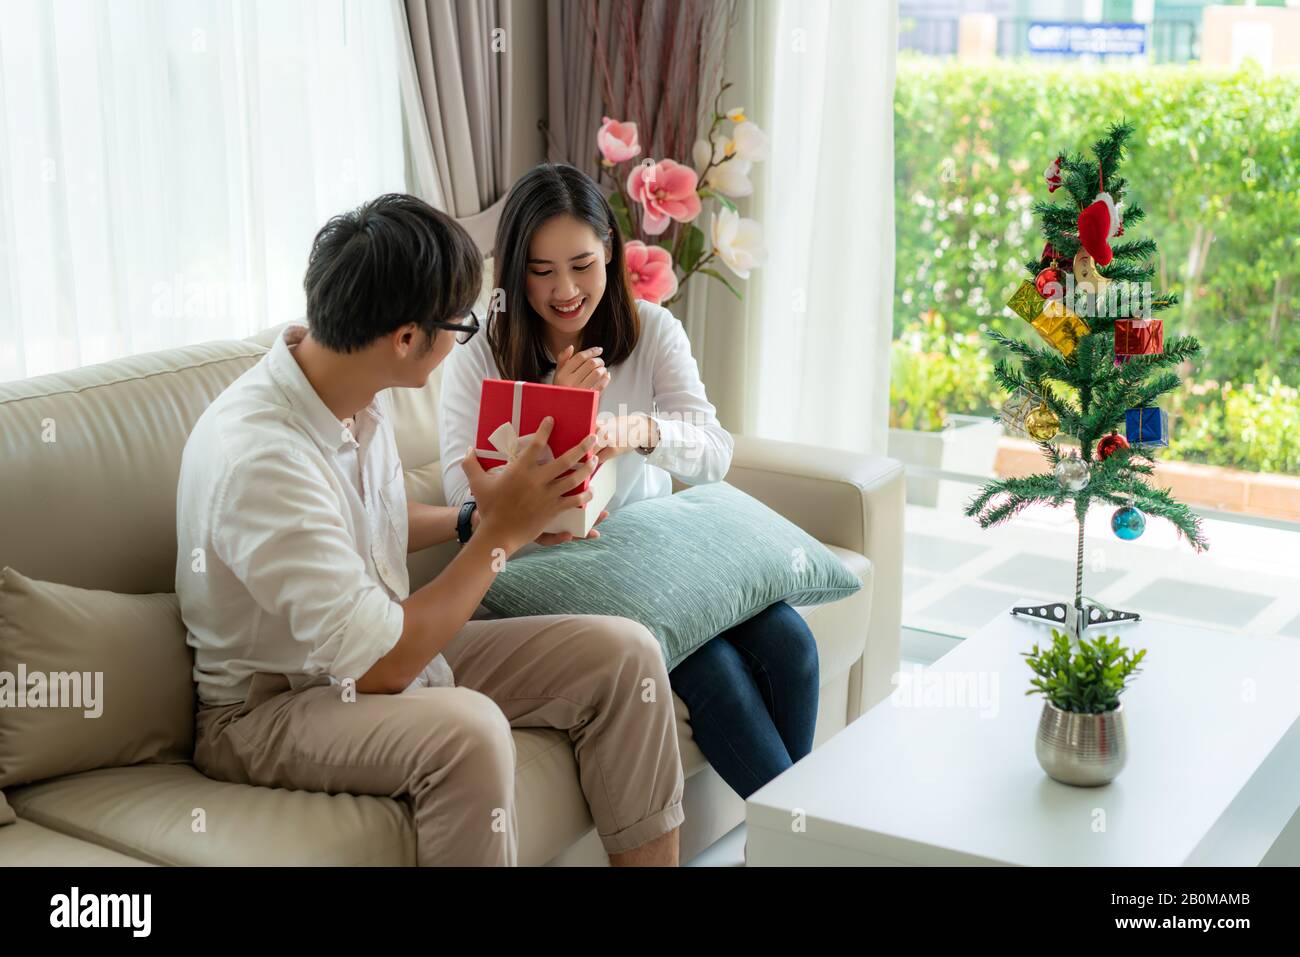 L'homme asiatique donne la femme une boîte cadeau rouge dans lequel il y a  un flacon de parfum. La femme a été ramassé sur le canapé à la maison.  L'arbre de Noël